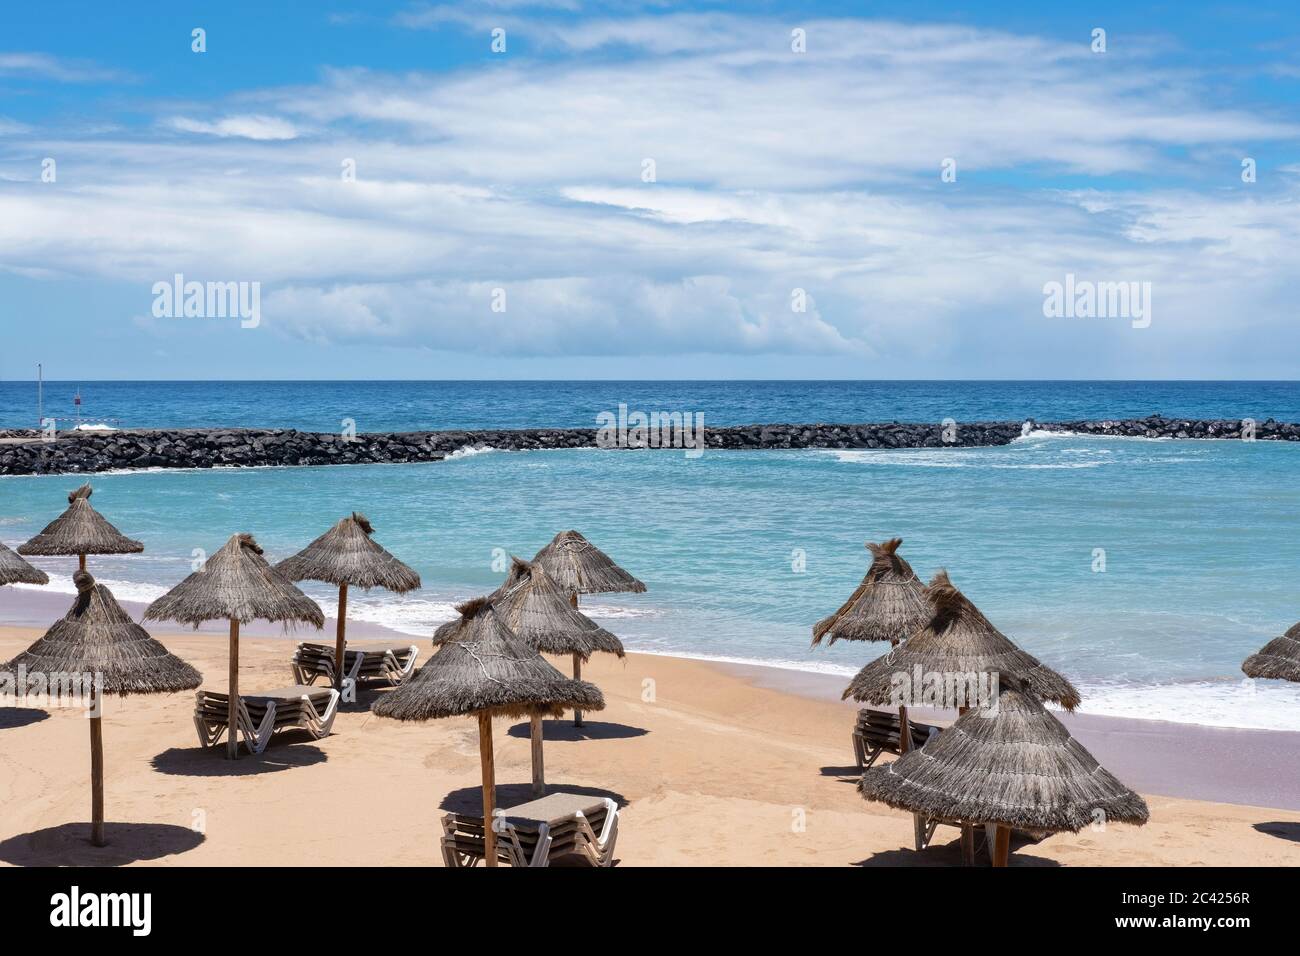 Playa del Camison, spiaggia vuota senza turisti colpiti da blocco coronavirus, di solito una spiaggia popolare per nuotare e prendere il sole, con sabbia fine Foto Stock